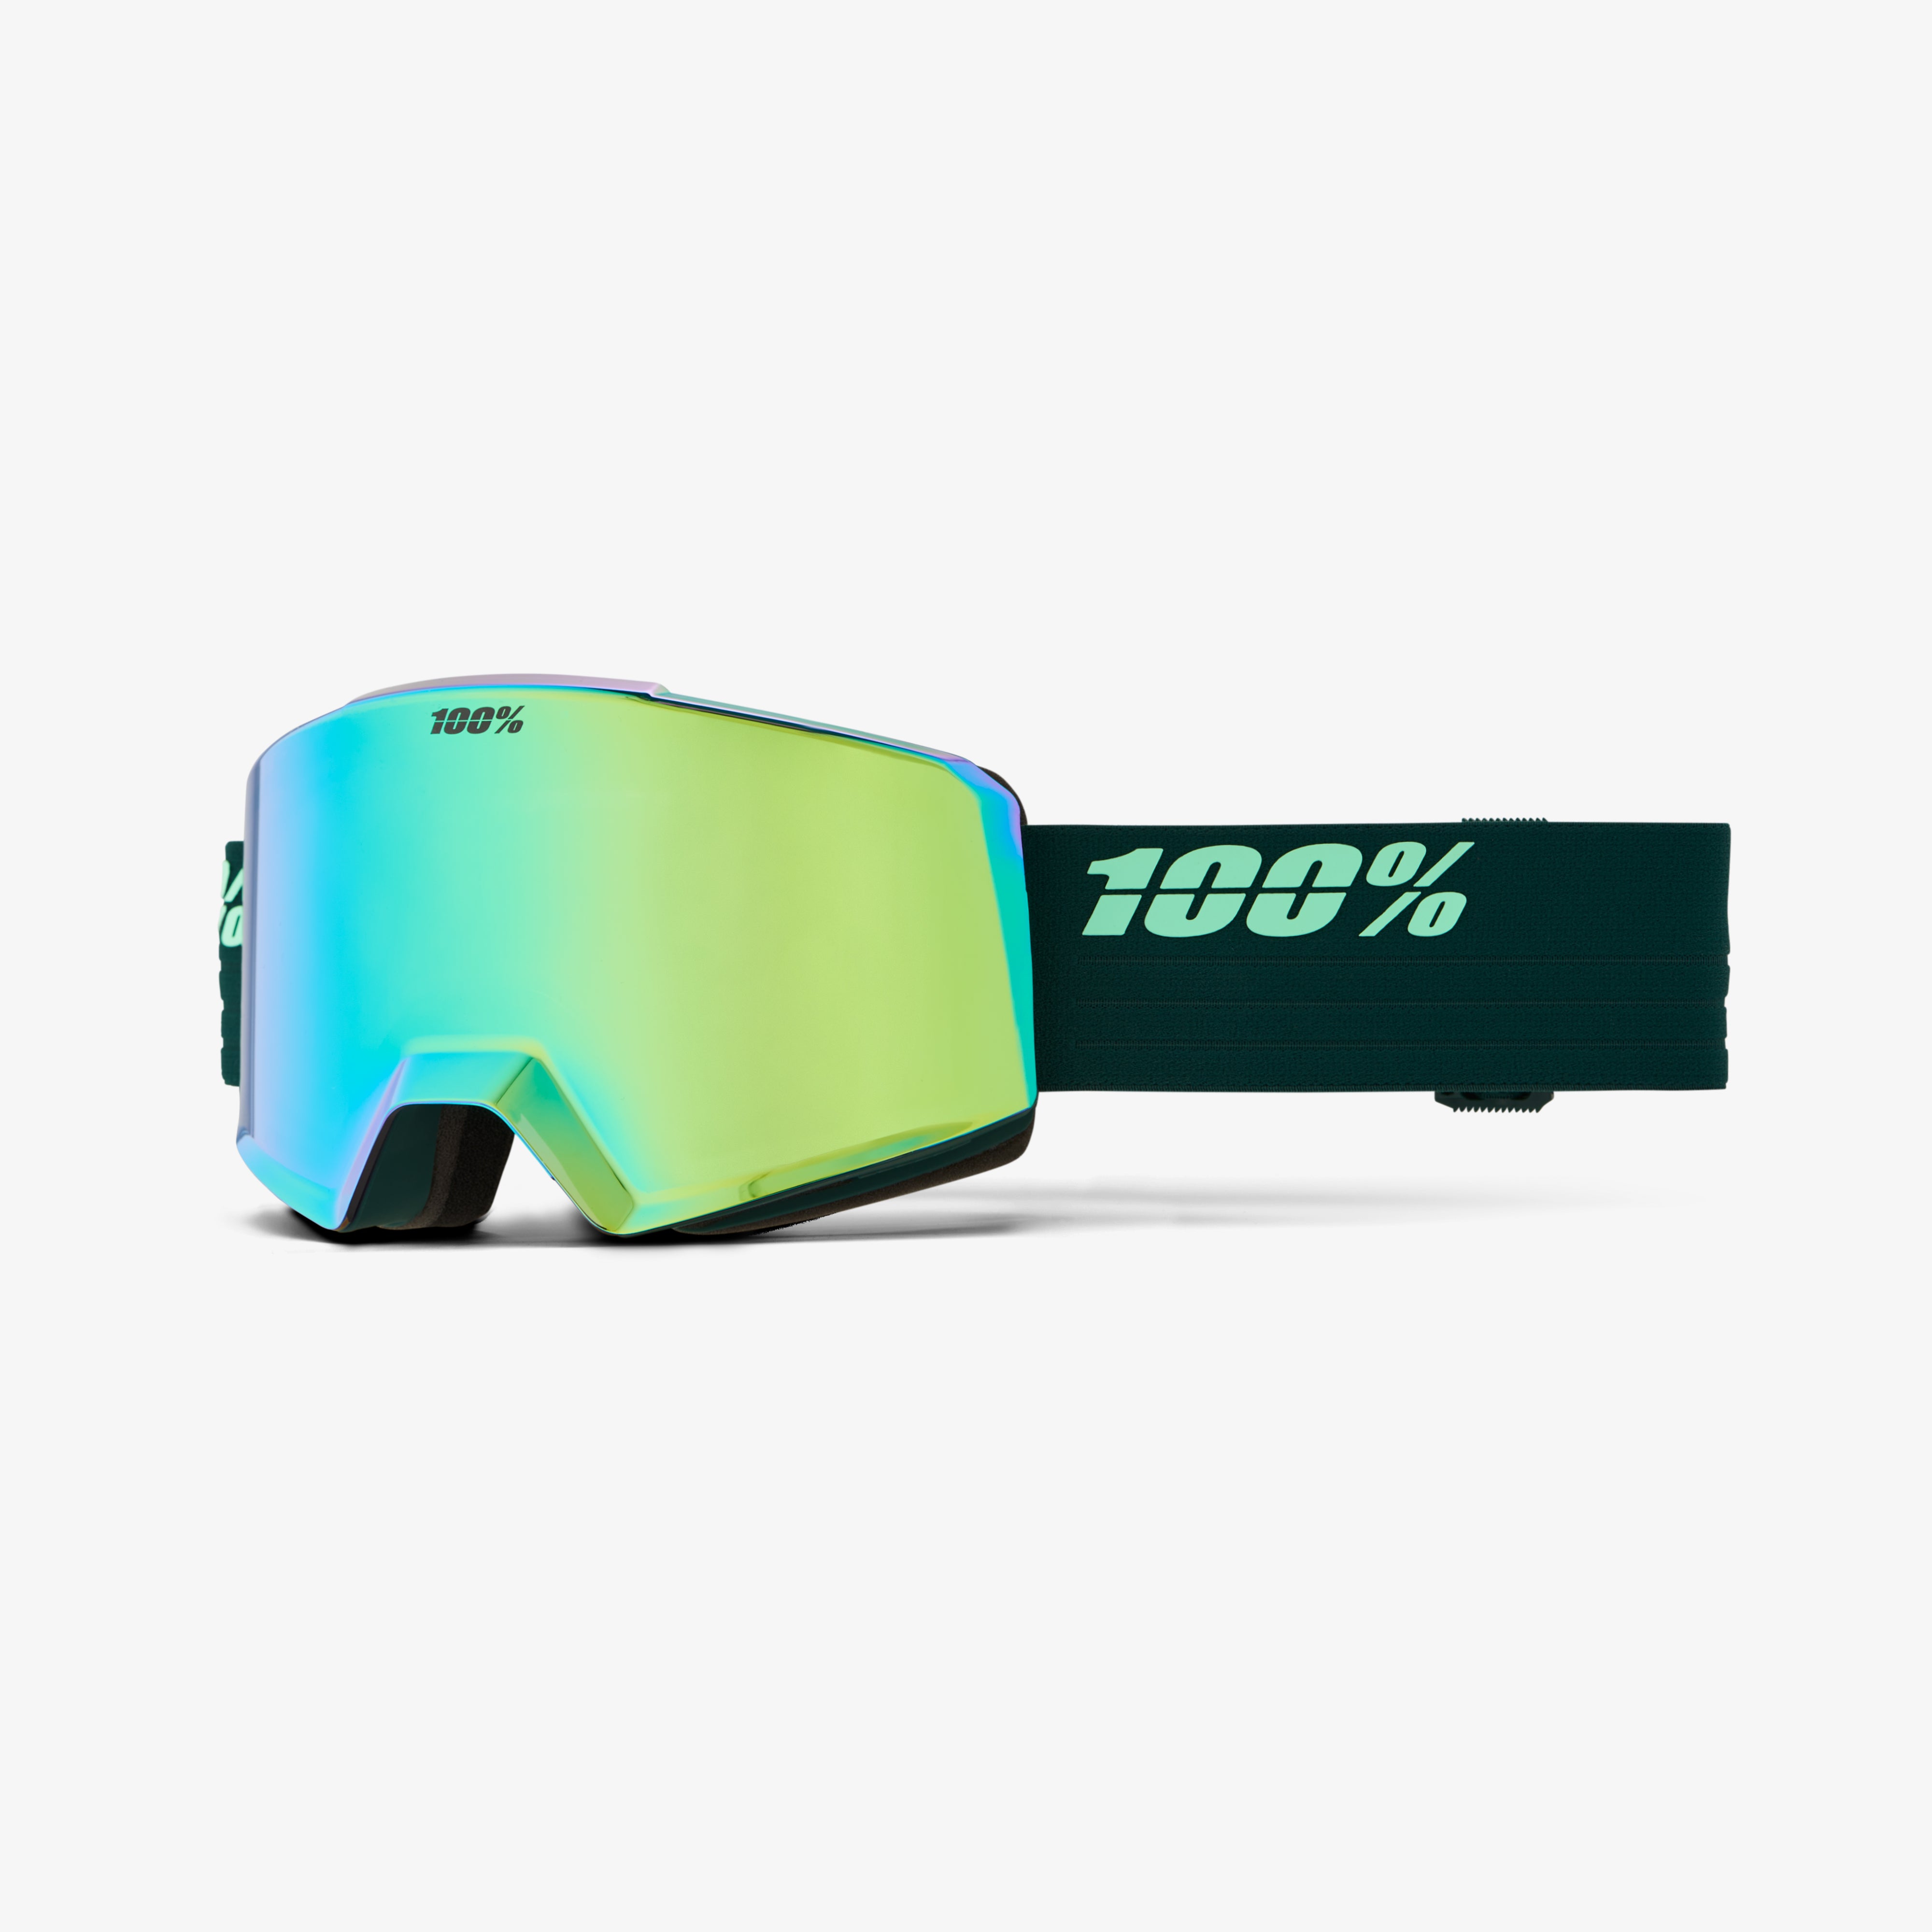 NORG AF HiPER Goggle Chameleon - Mirror Green Lens